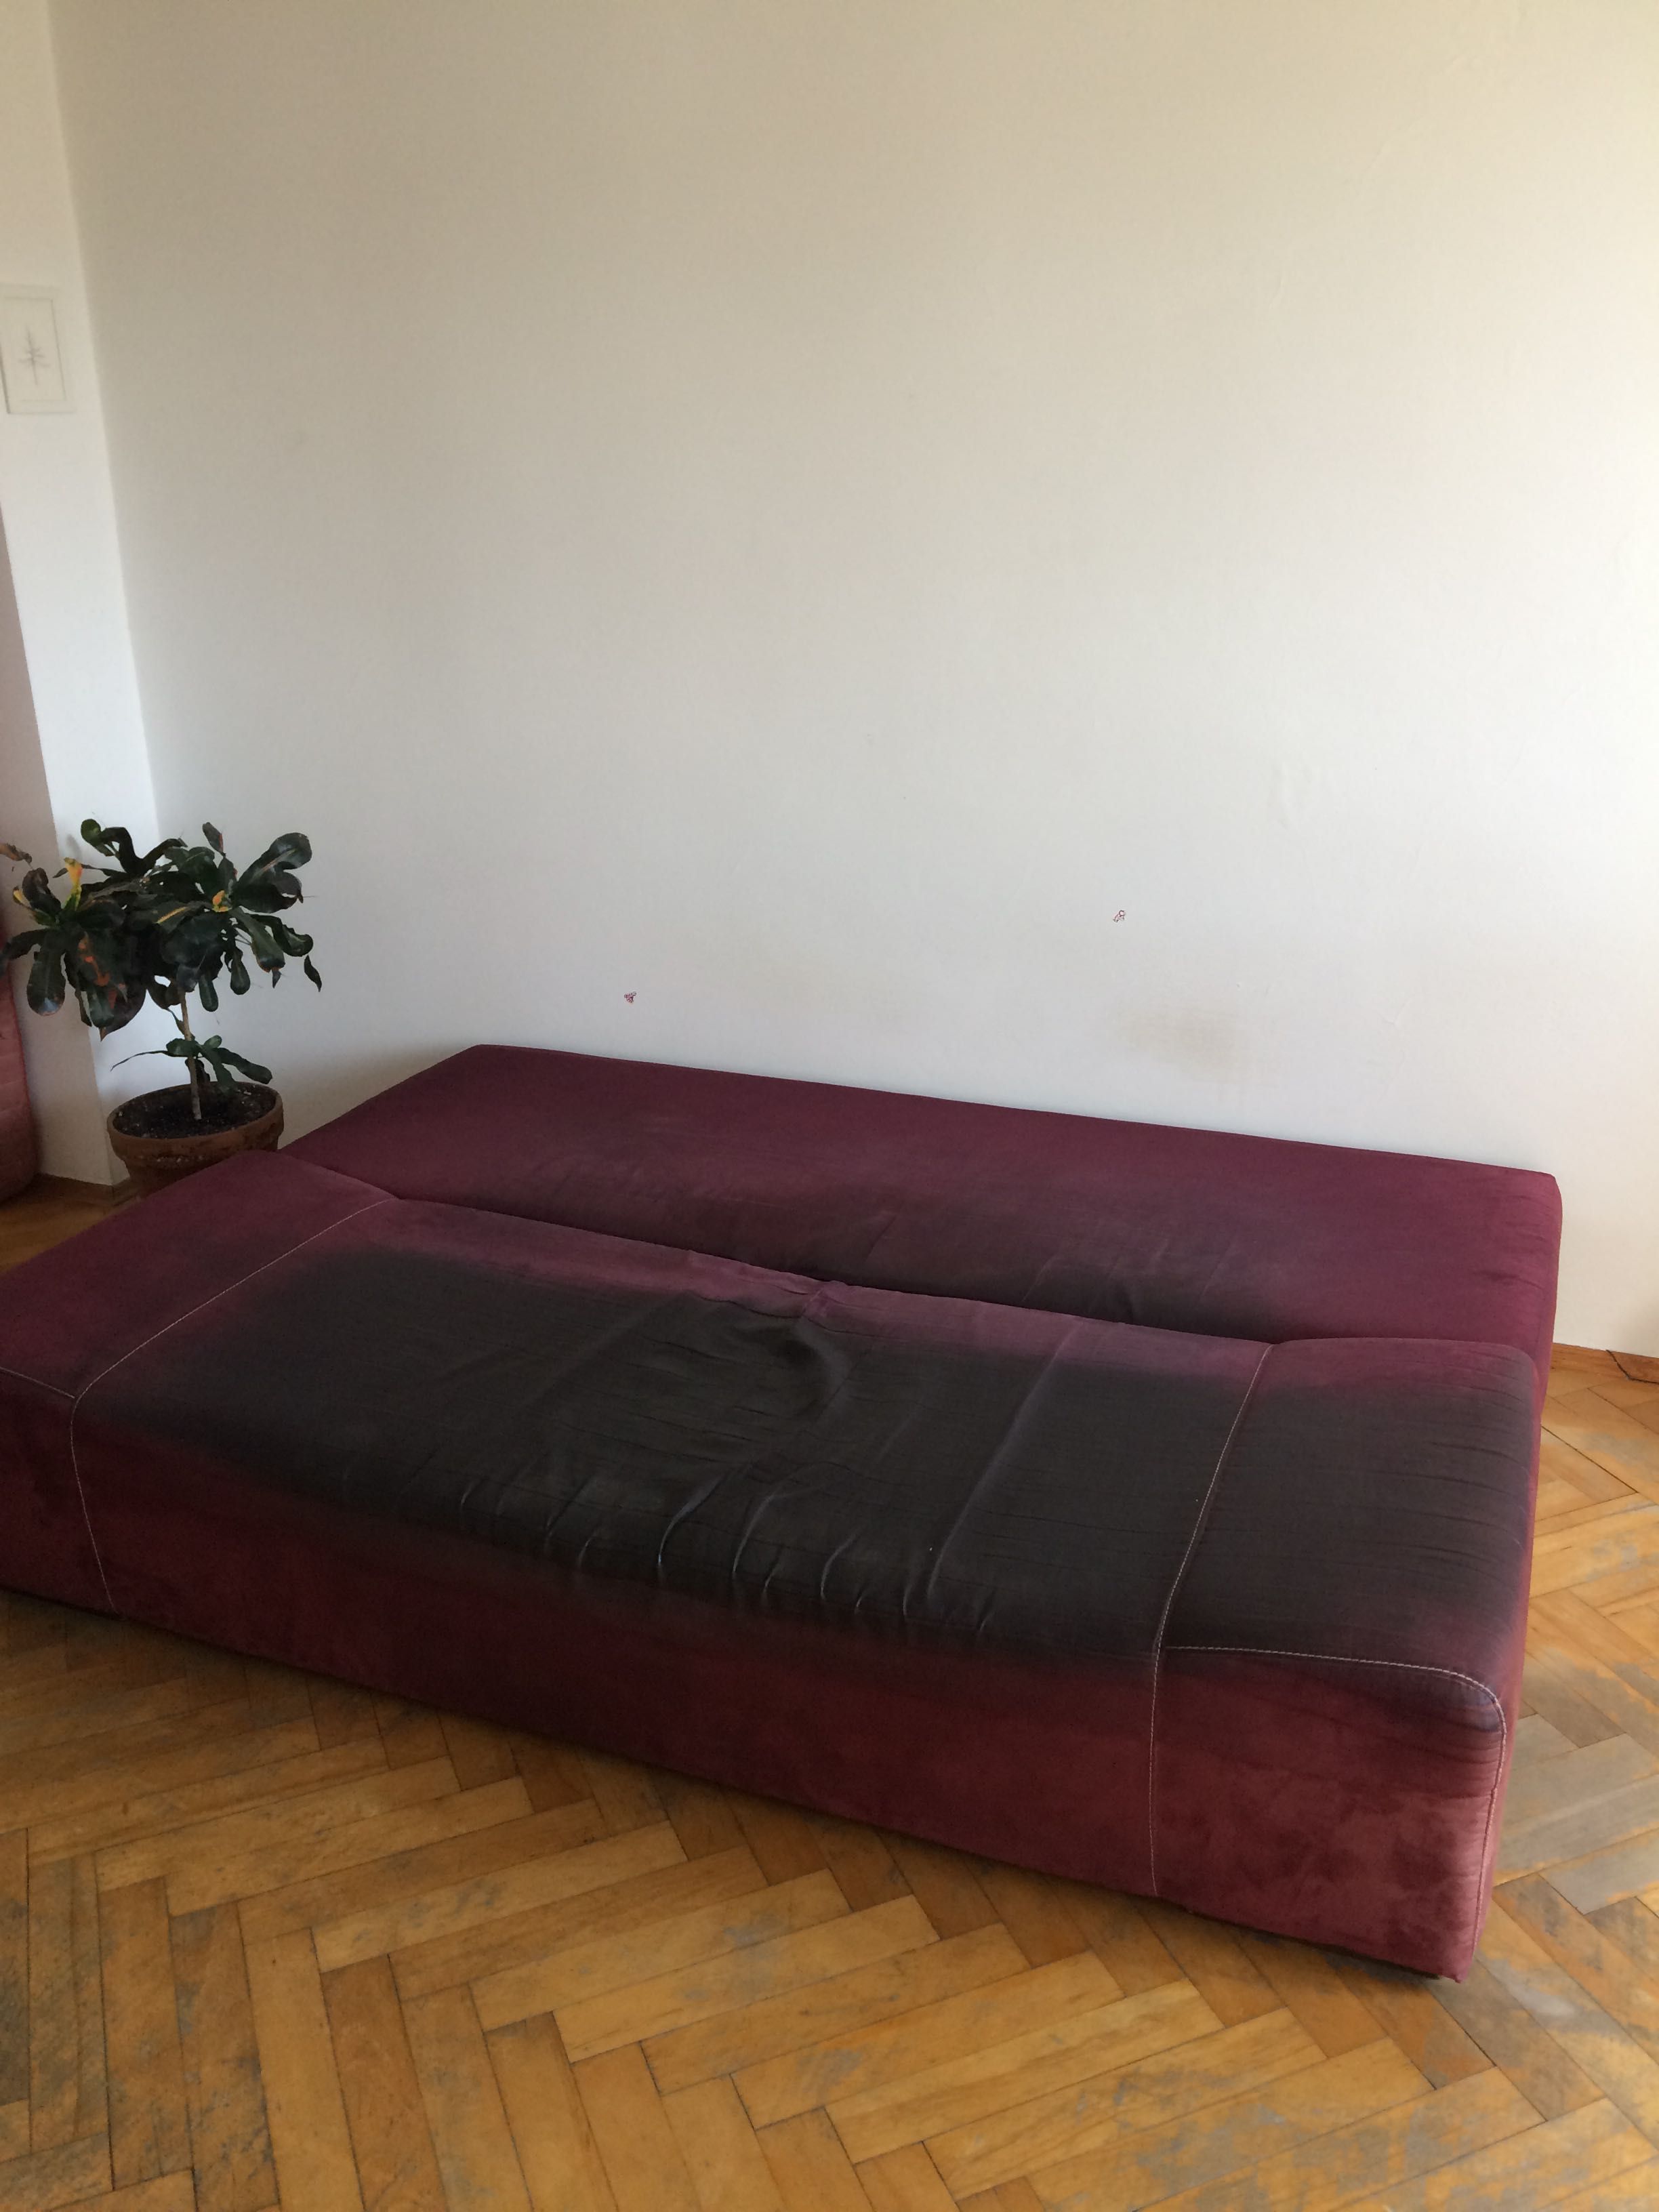 Kanapa / sofa rozkładana, dwuosobowa, z pojemnikiem